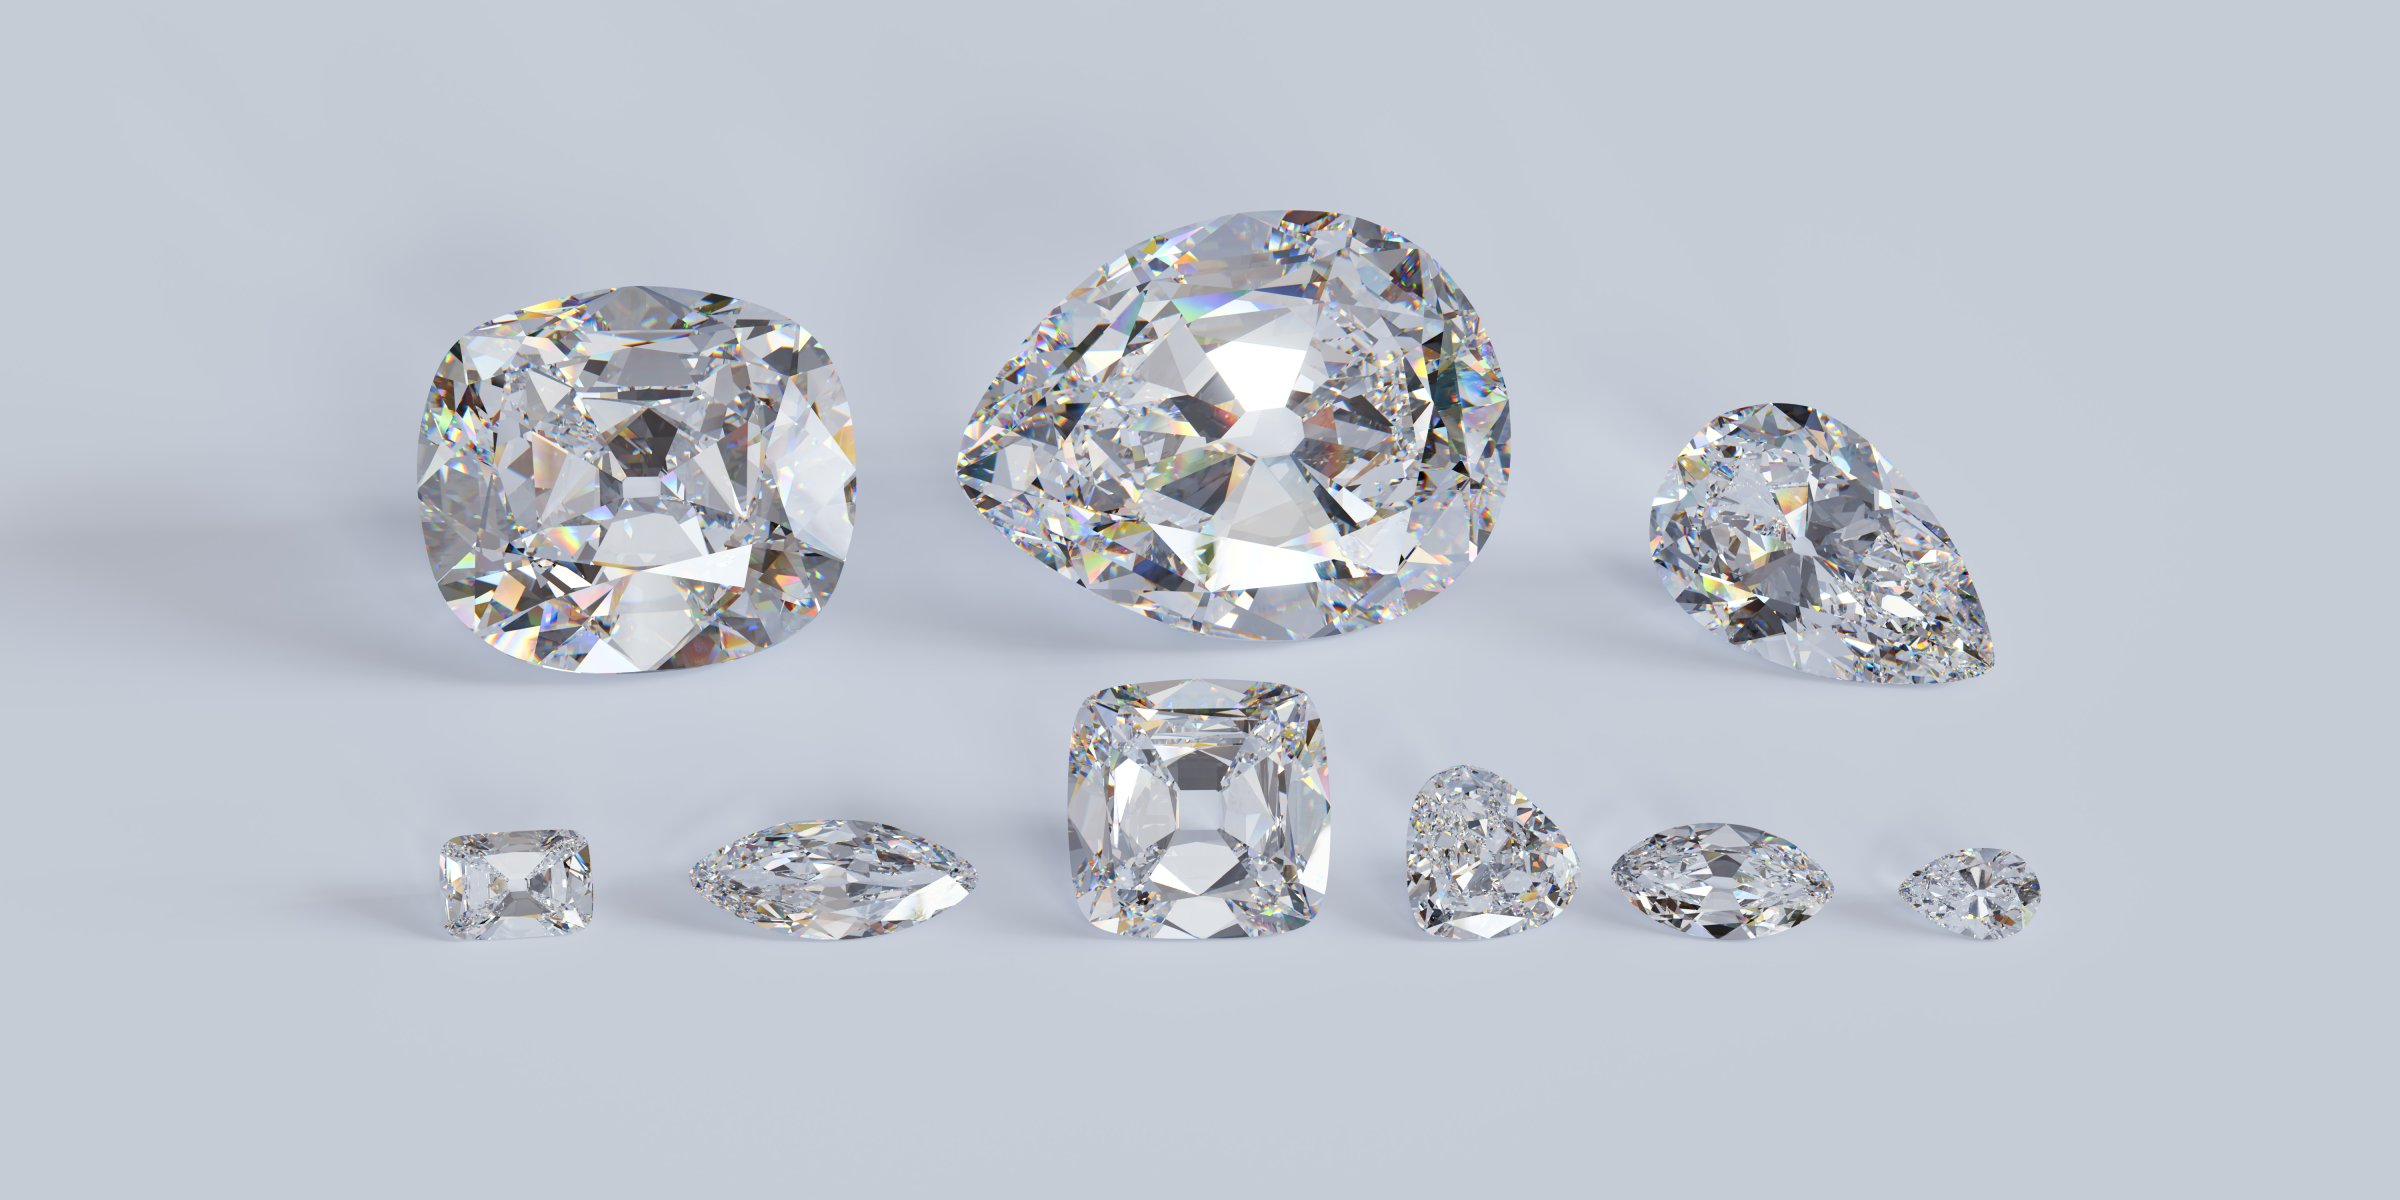 3D replica of nine major jewels cut from the biggest diamond Cullinan.